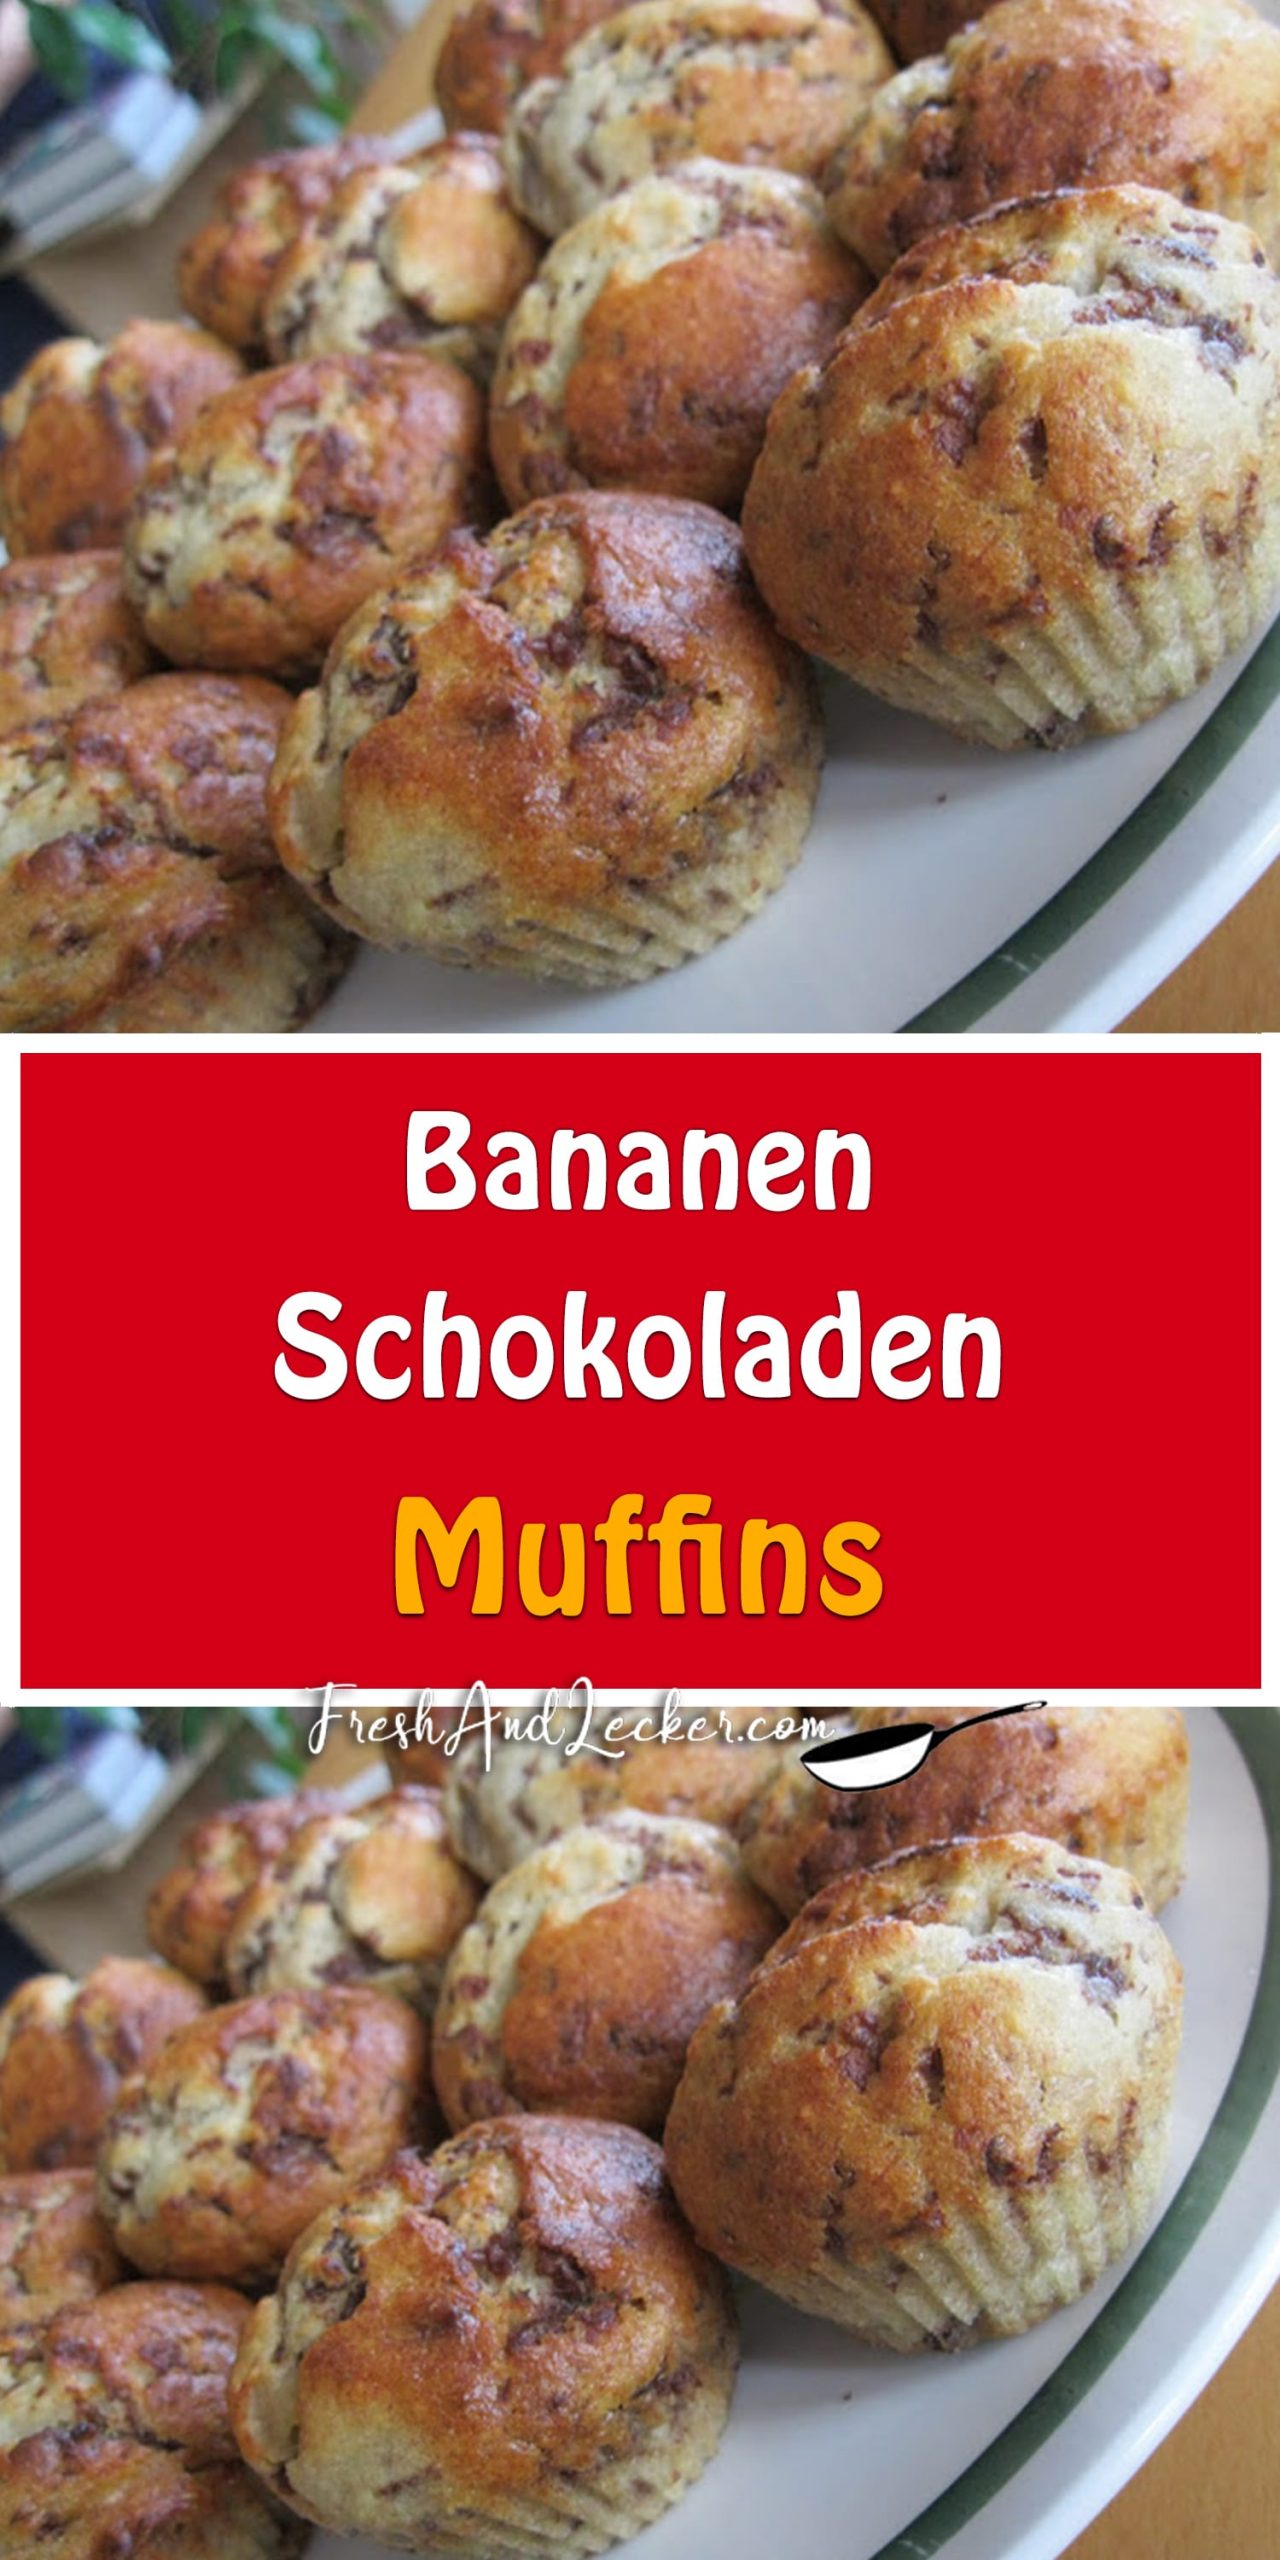 Bananen-Schokoladen-Muffins - Fresh Lecker